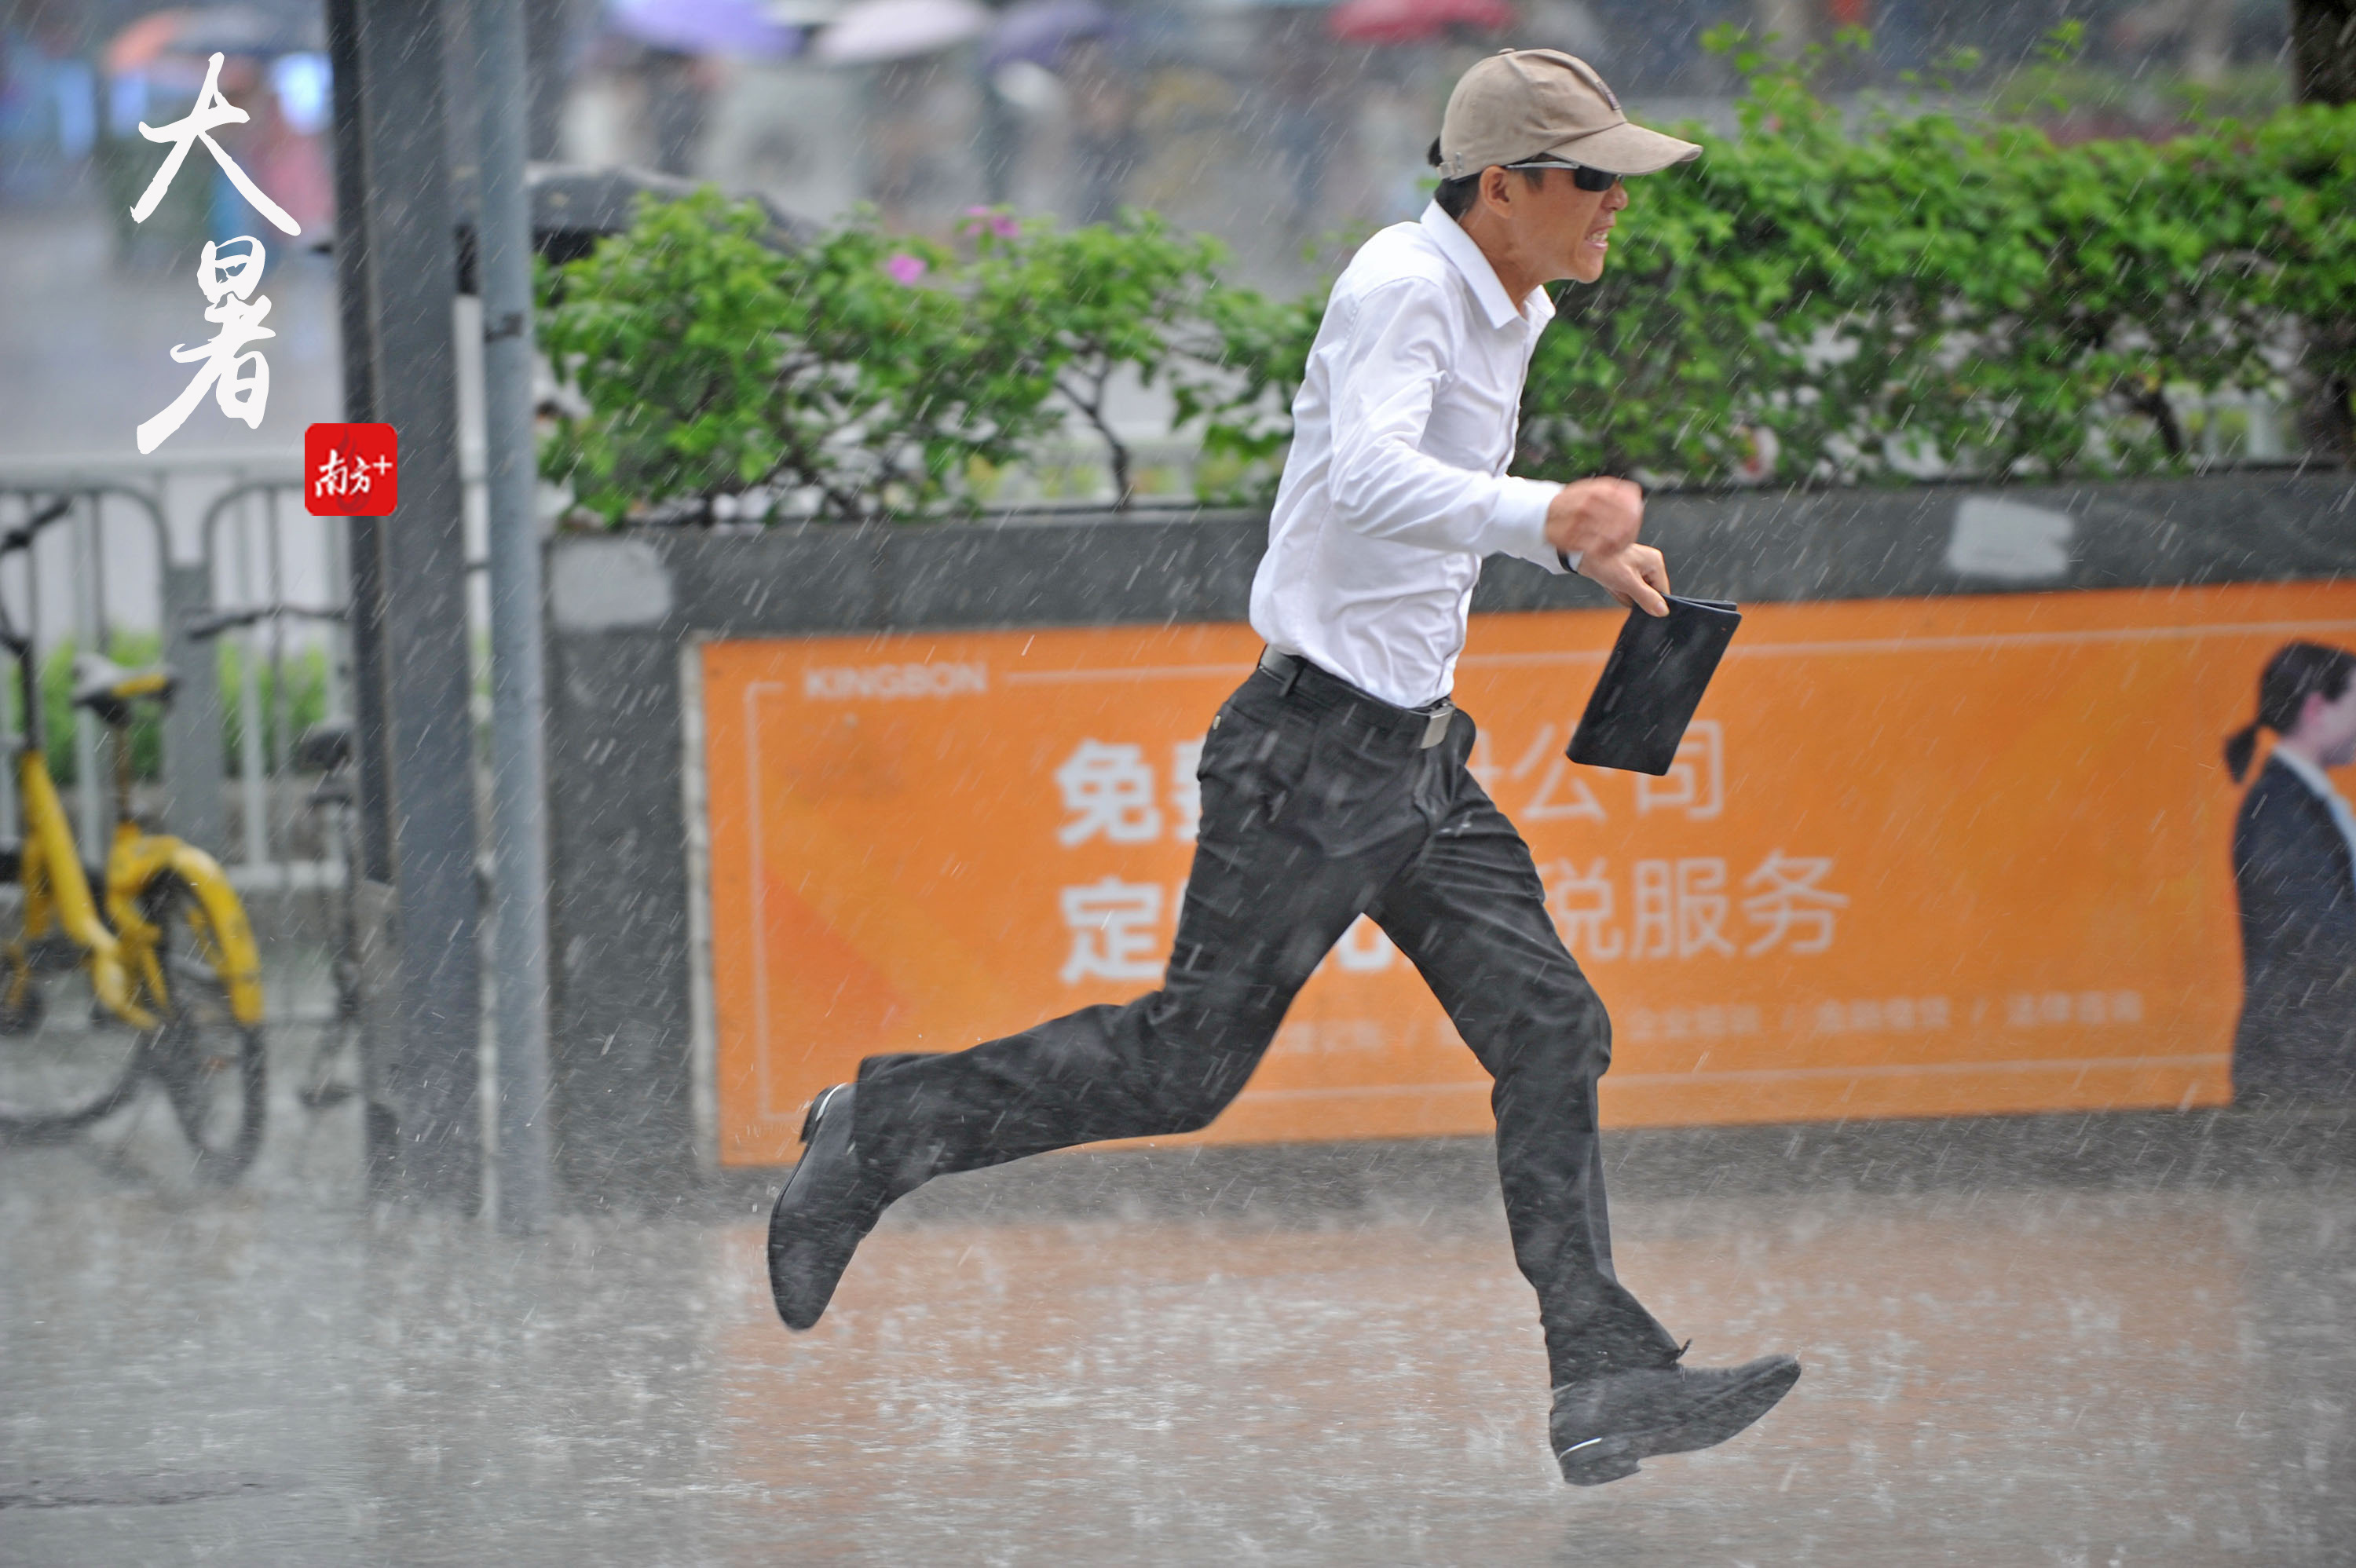 倾盆大雨来势凶猛,没准备伞的市民只能变成落汤鸡,奔走着躲避大雨